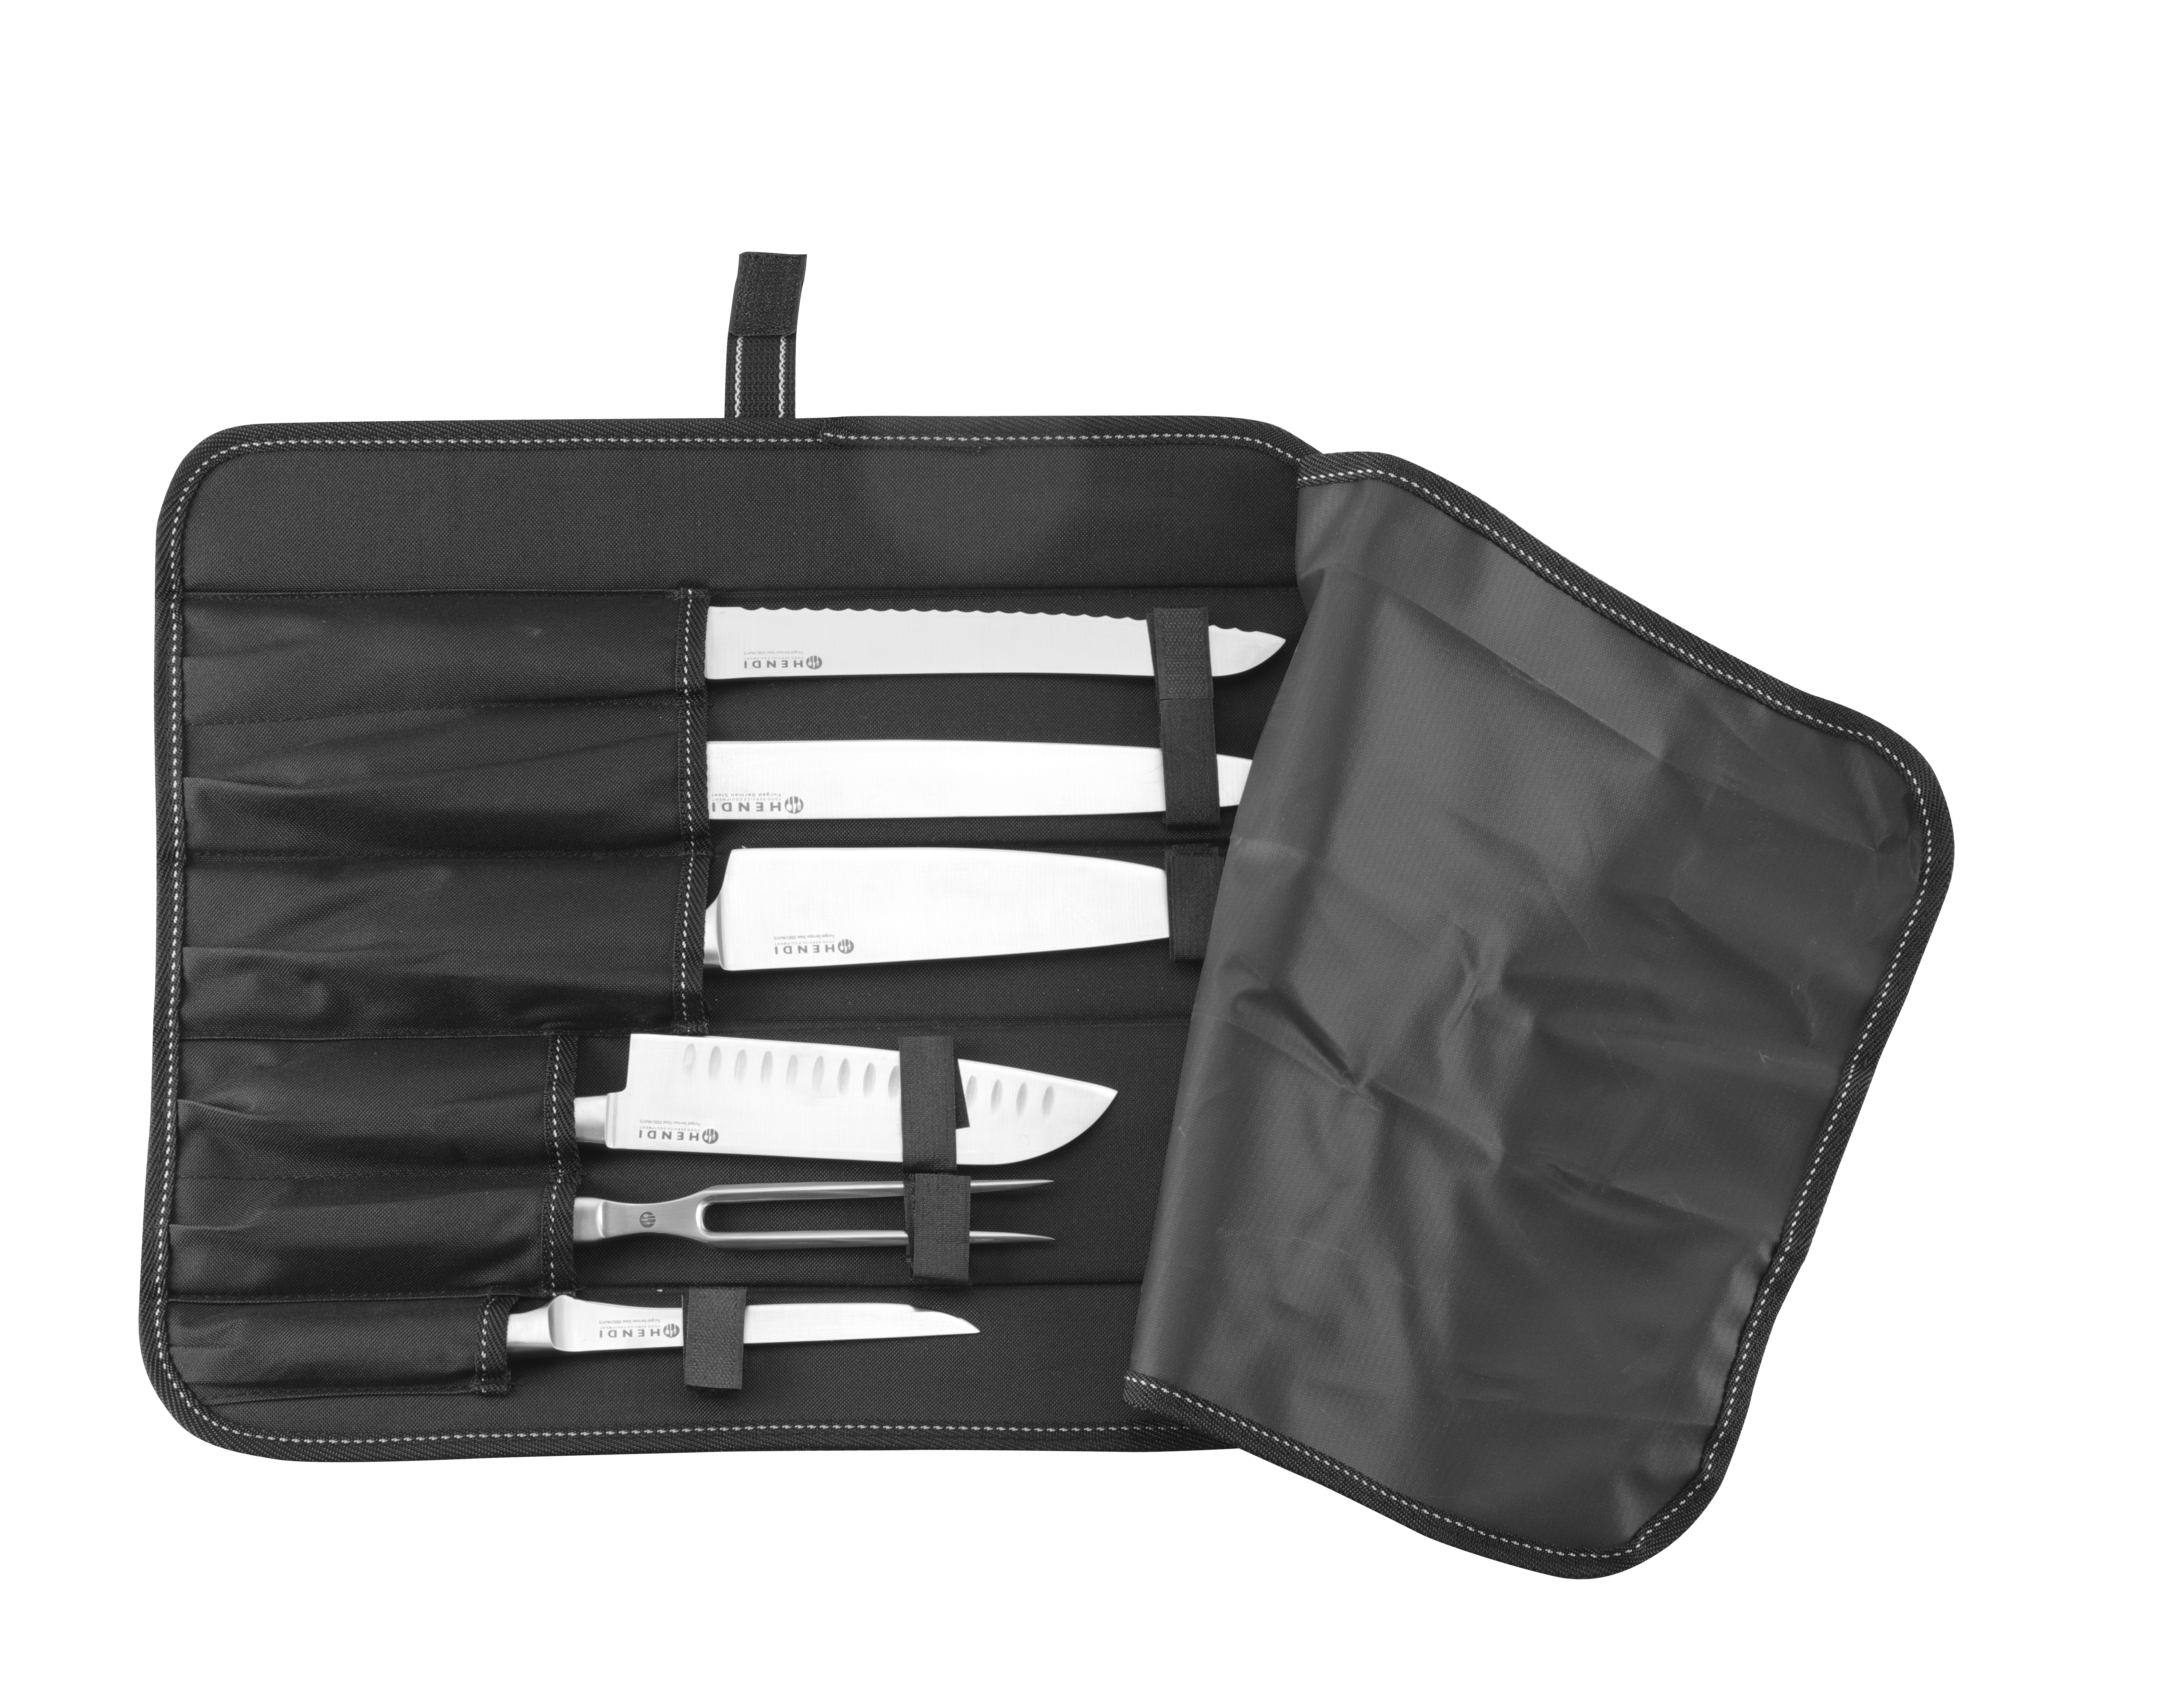 Porte-couverts noir inox 120x150 mm - Hendi food service equipement -  Couverts - référence 427033 - Stock-Direct CHR